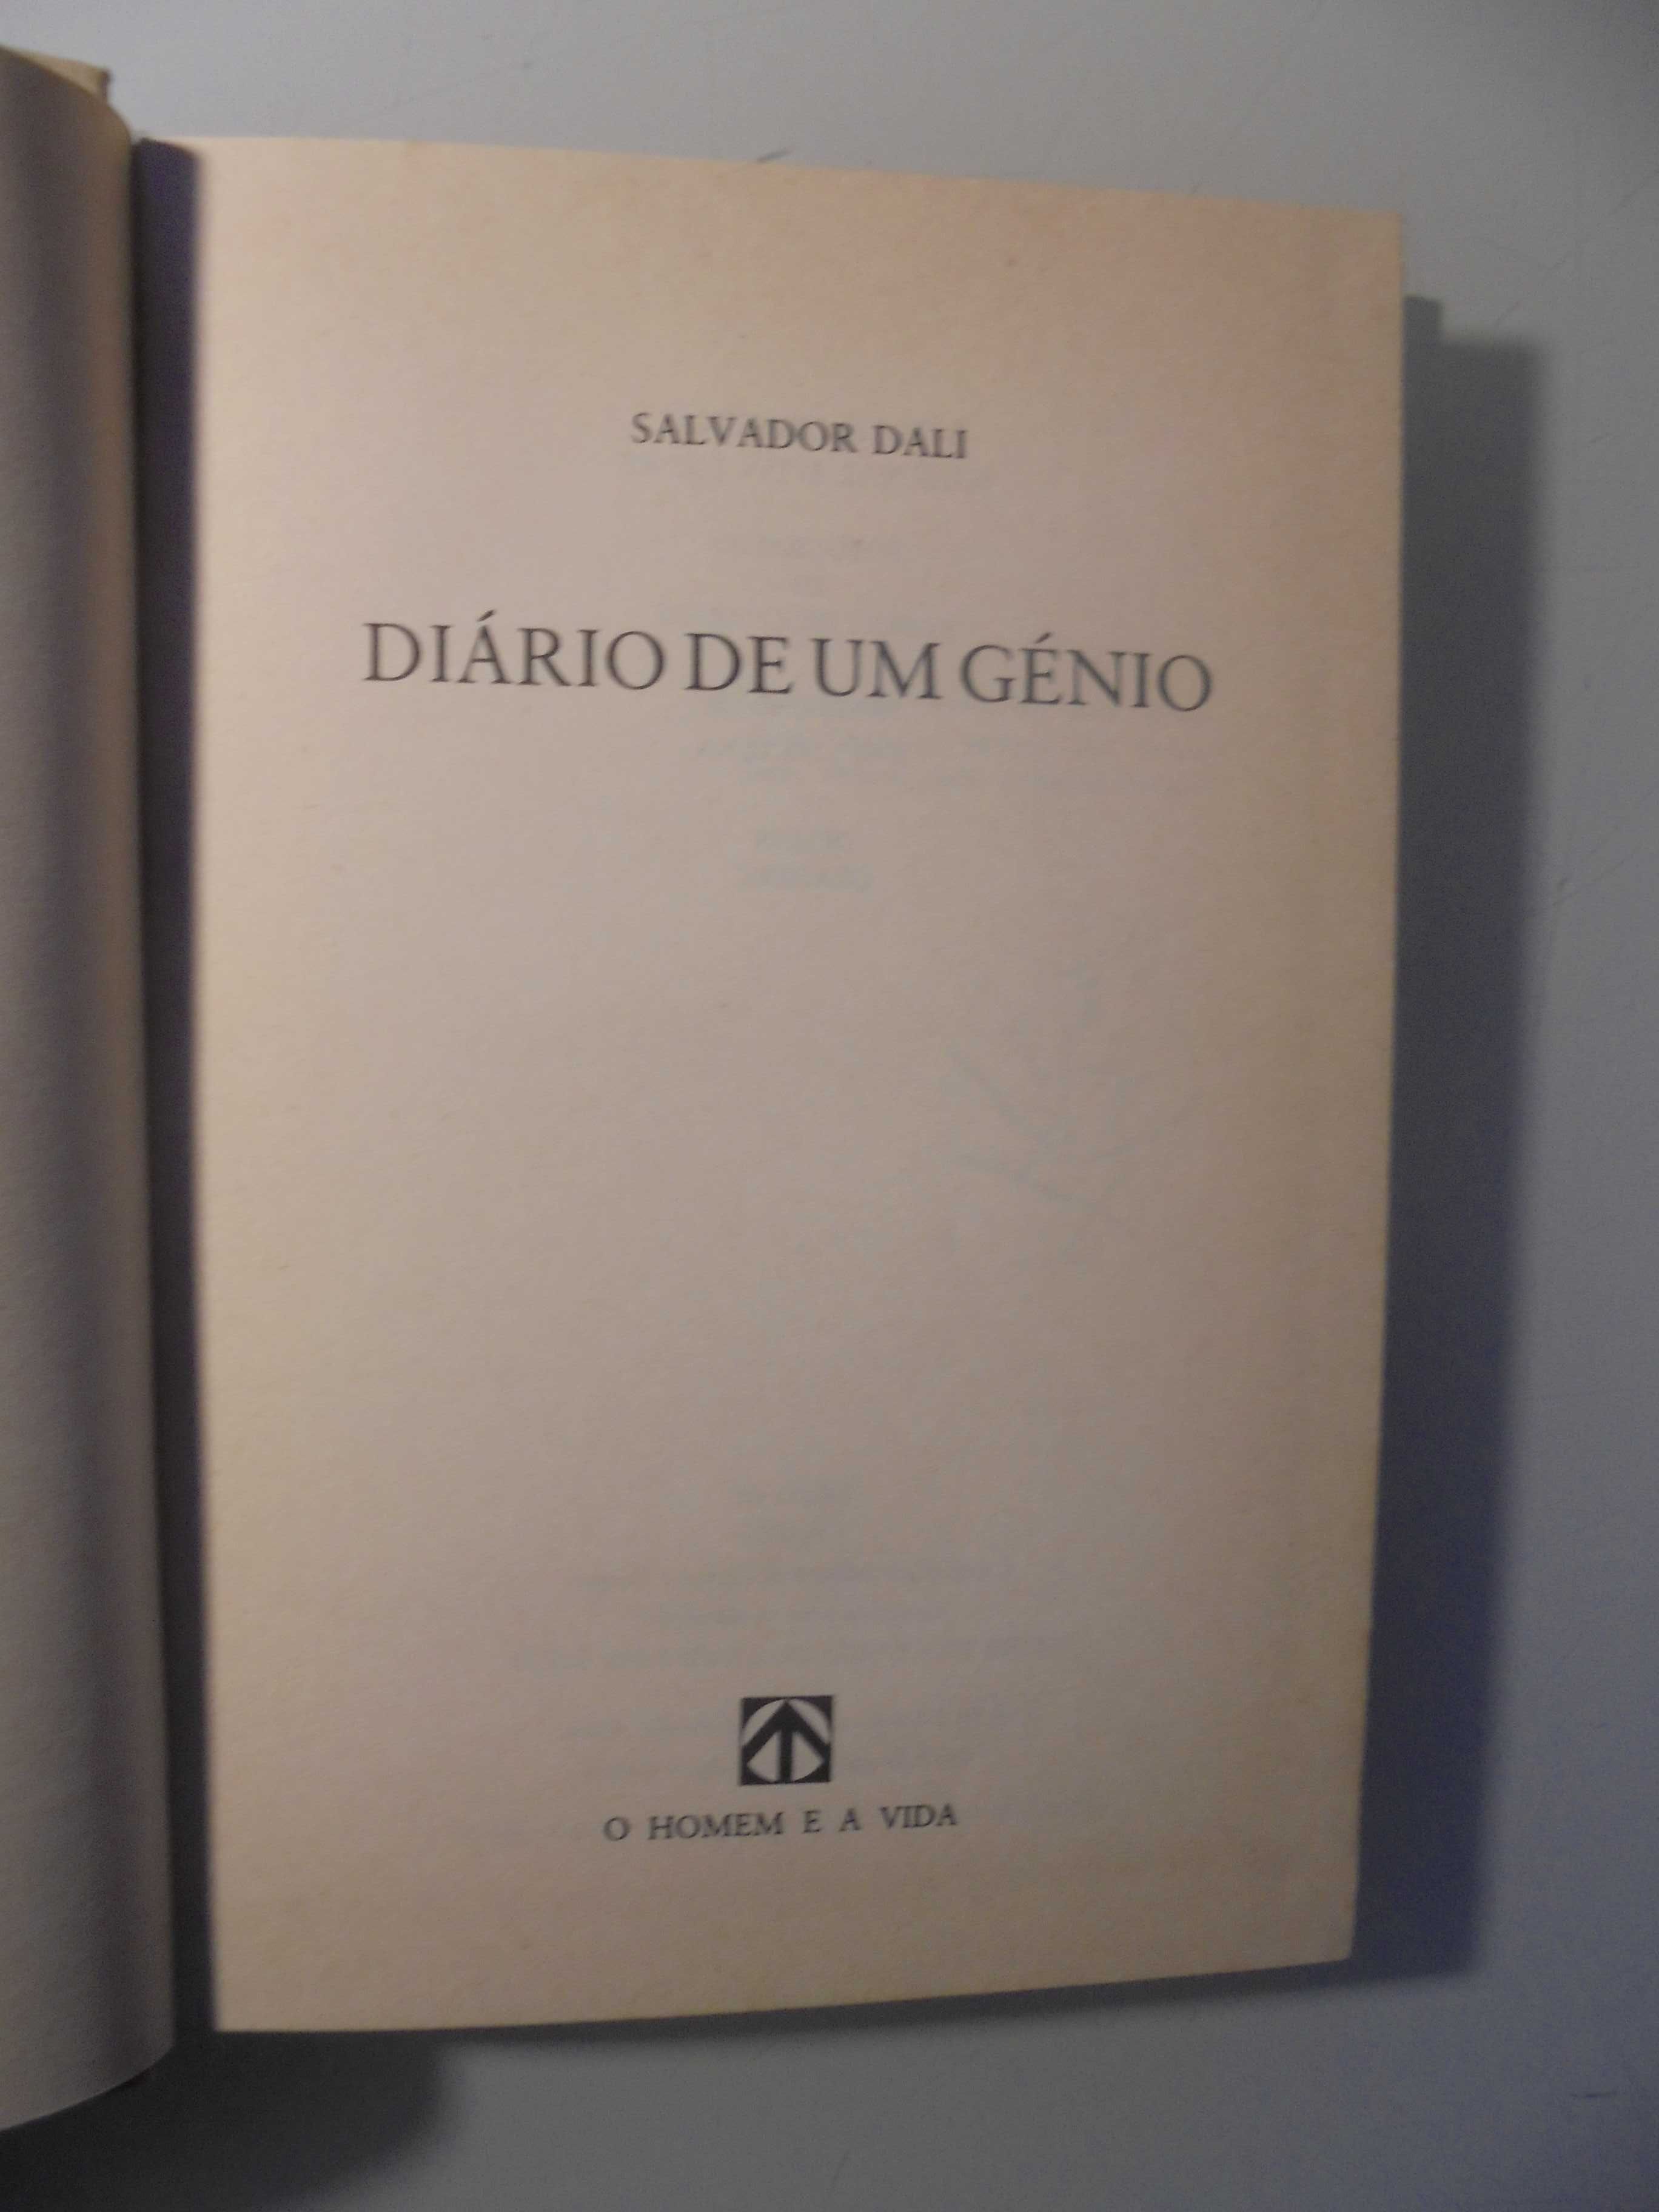 Dali (Salvador);Diário de um Génio